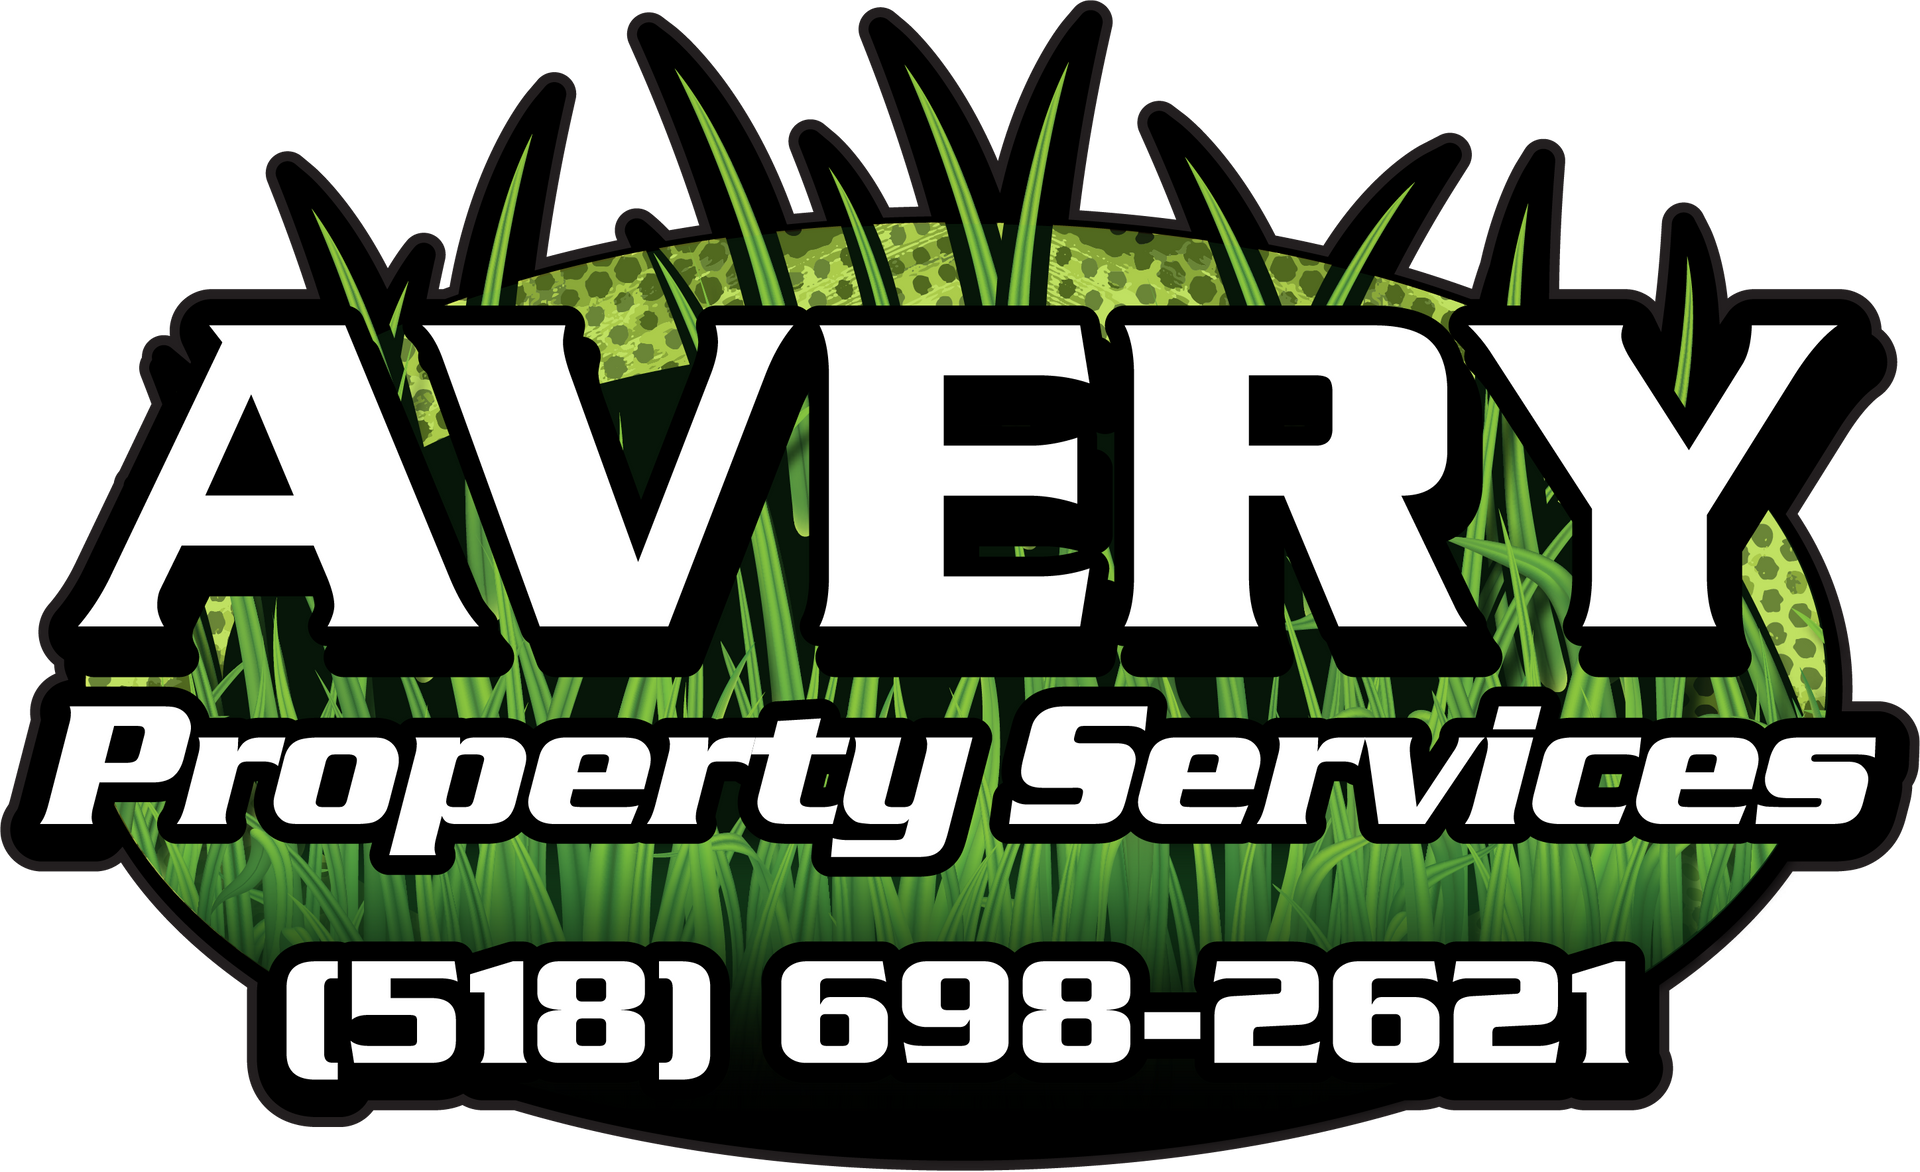 Avery Property Services Logo